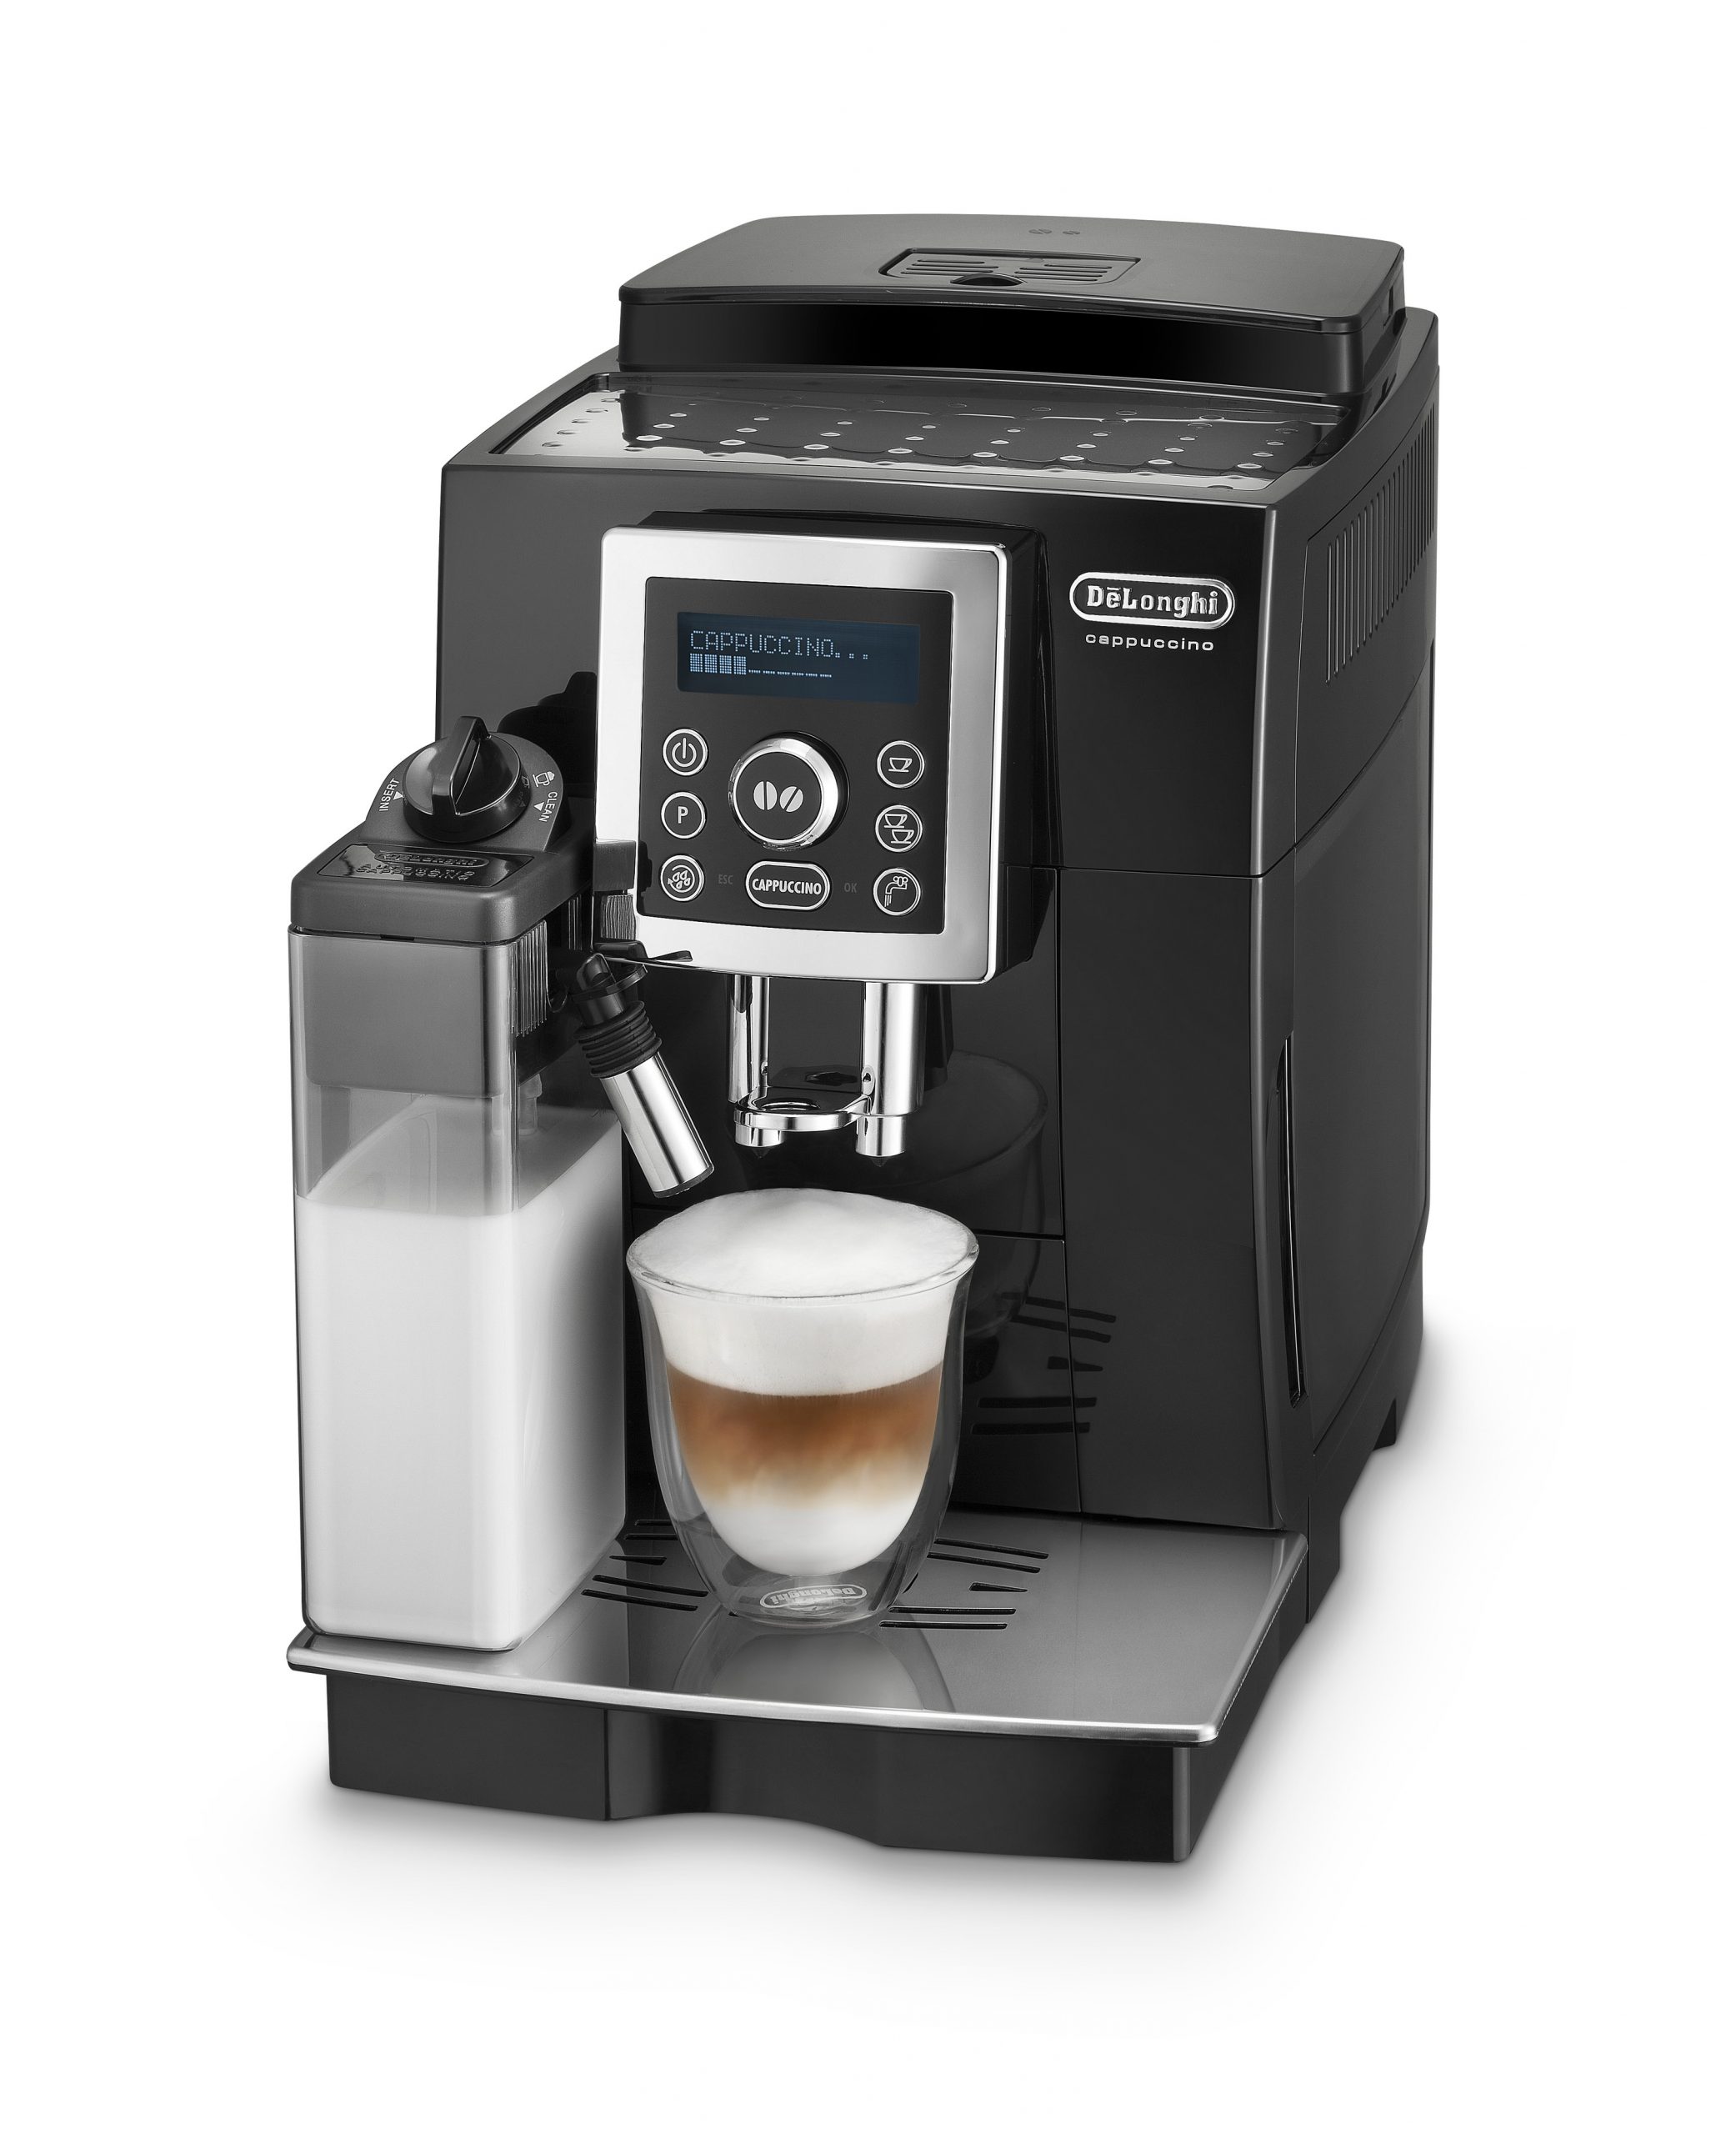 La cafetera superautomática con más comentarios en  es esta De'Longhi  sencillísima de utilizar y ofrece café de calidad al instante